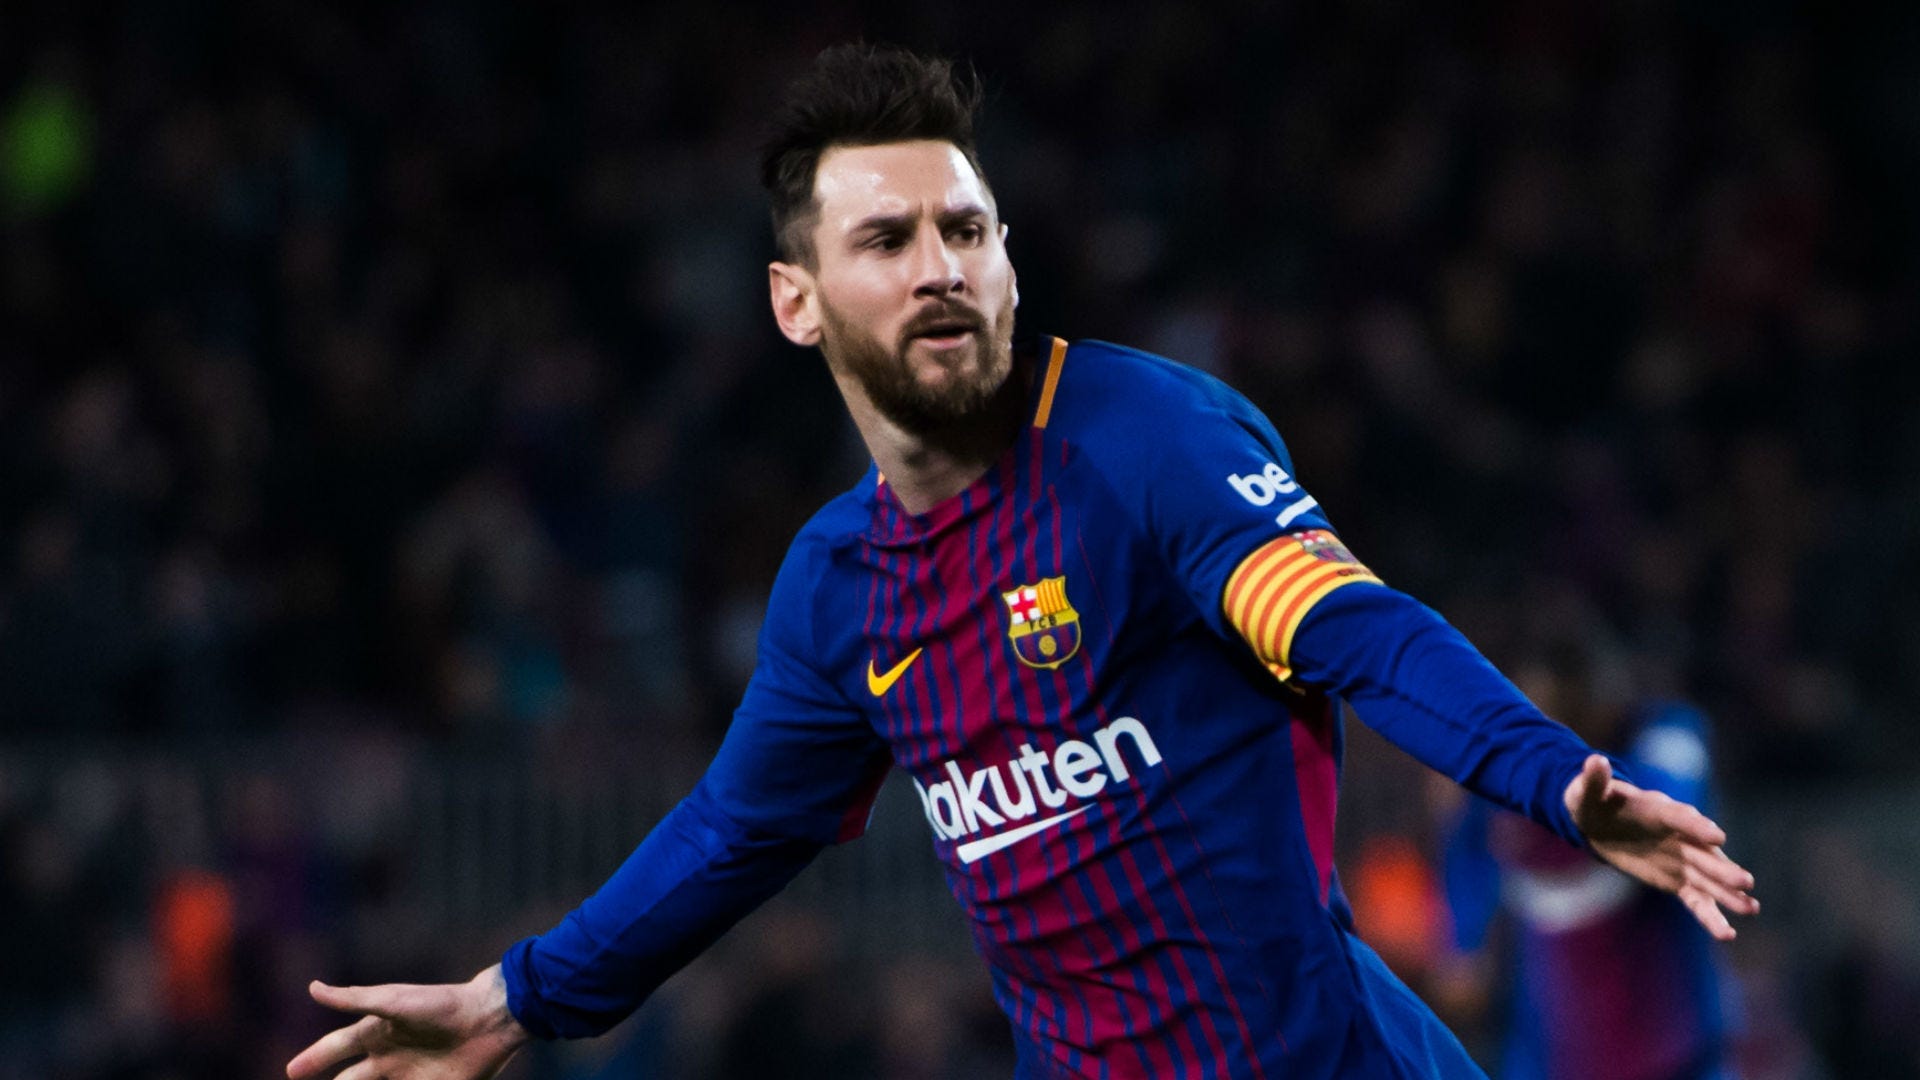 Margaret Mitchell Indirecto Llevar Messi, ganador de la Bota de Oro 2017/18 | Goal.com Espana